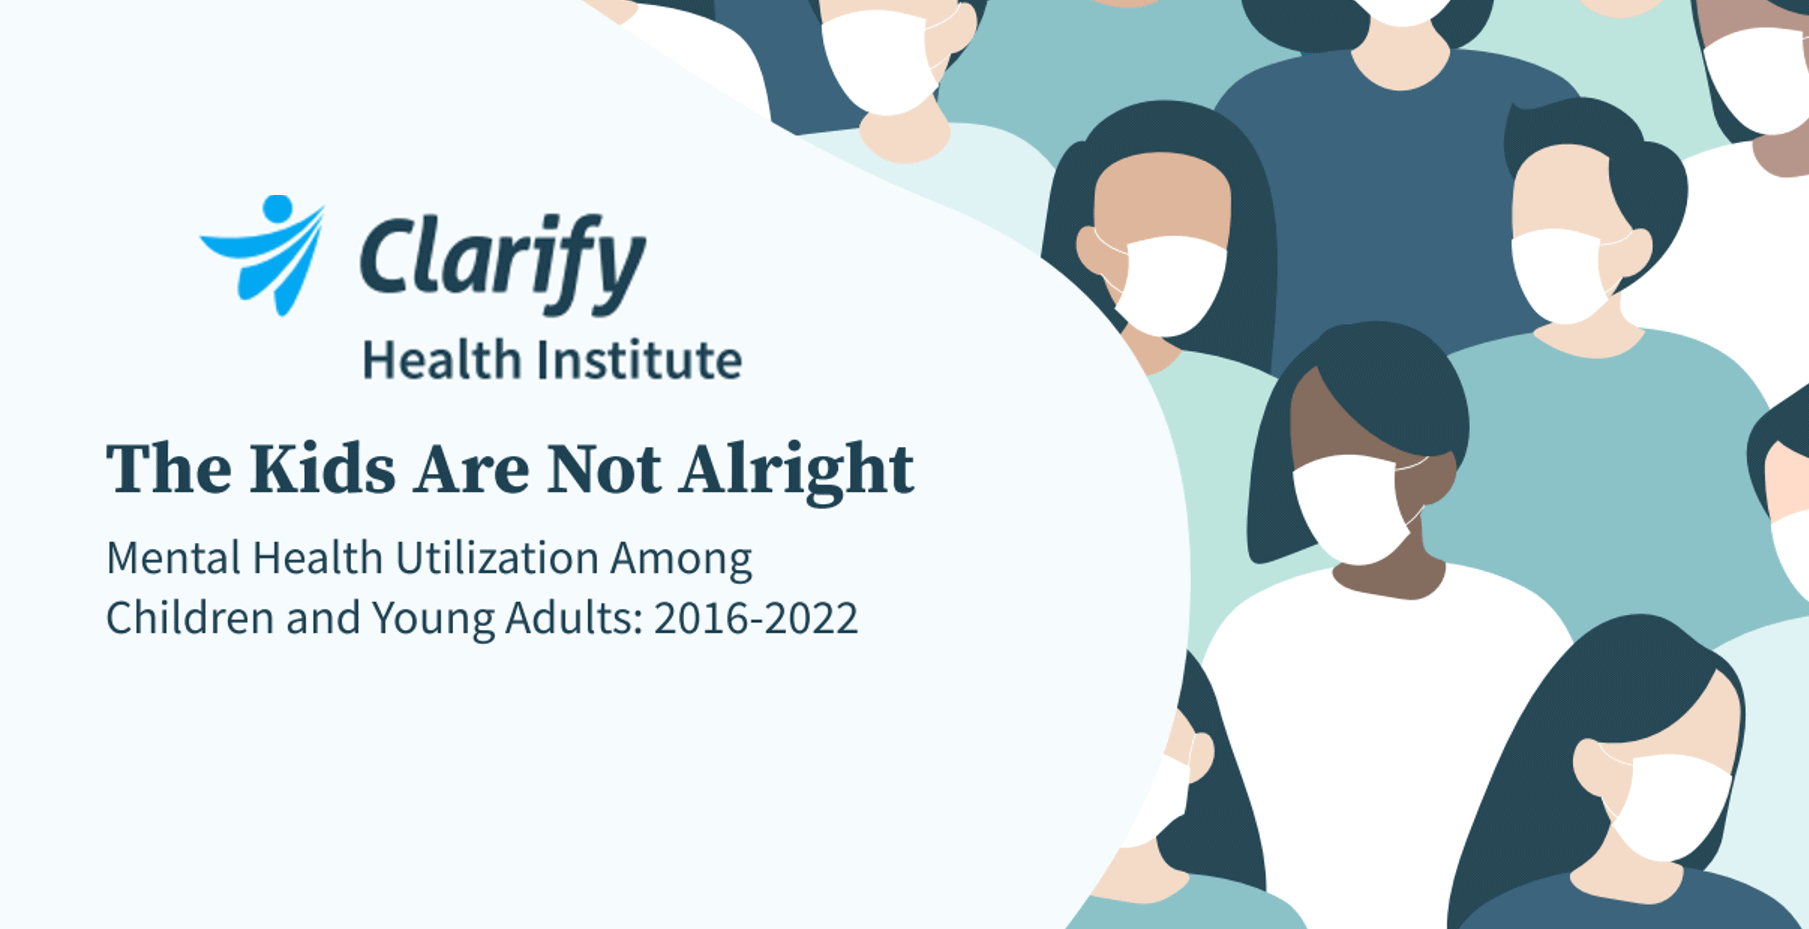 Clarify Health Institute